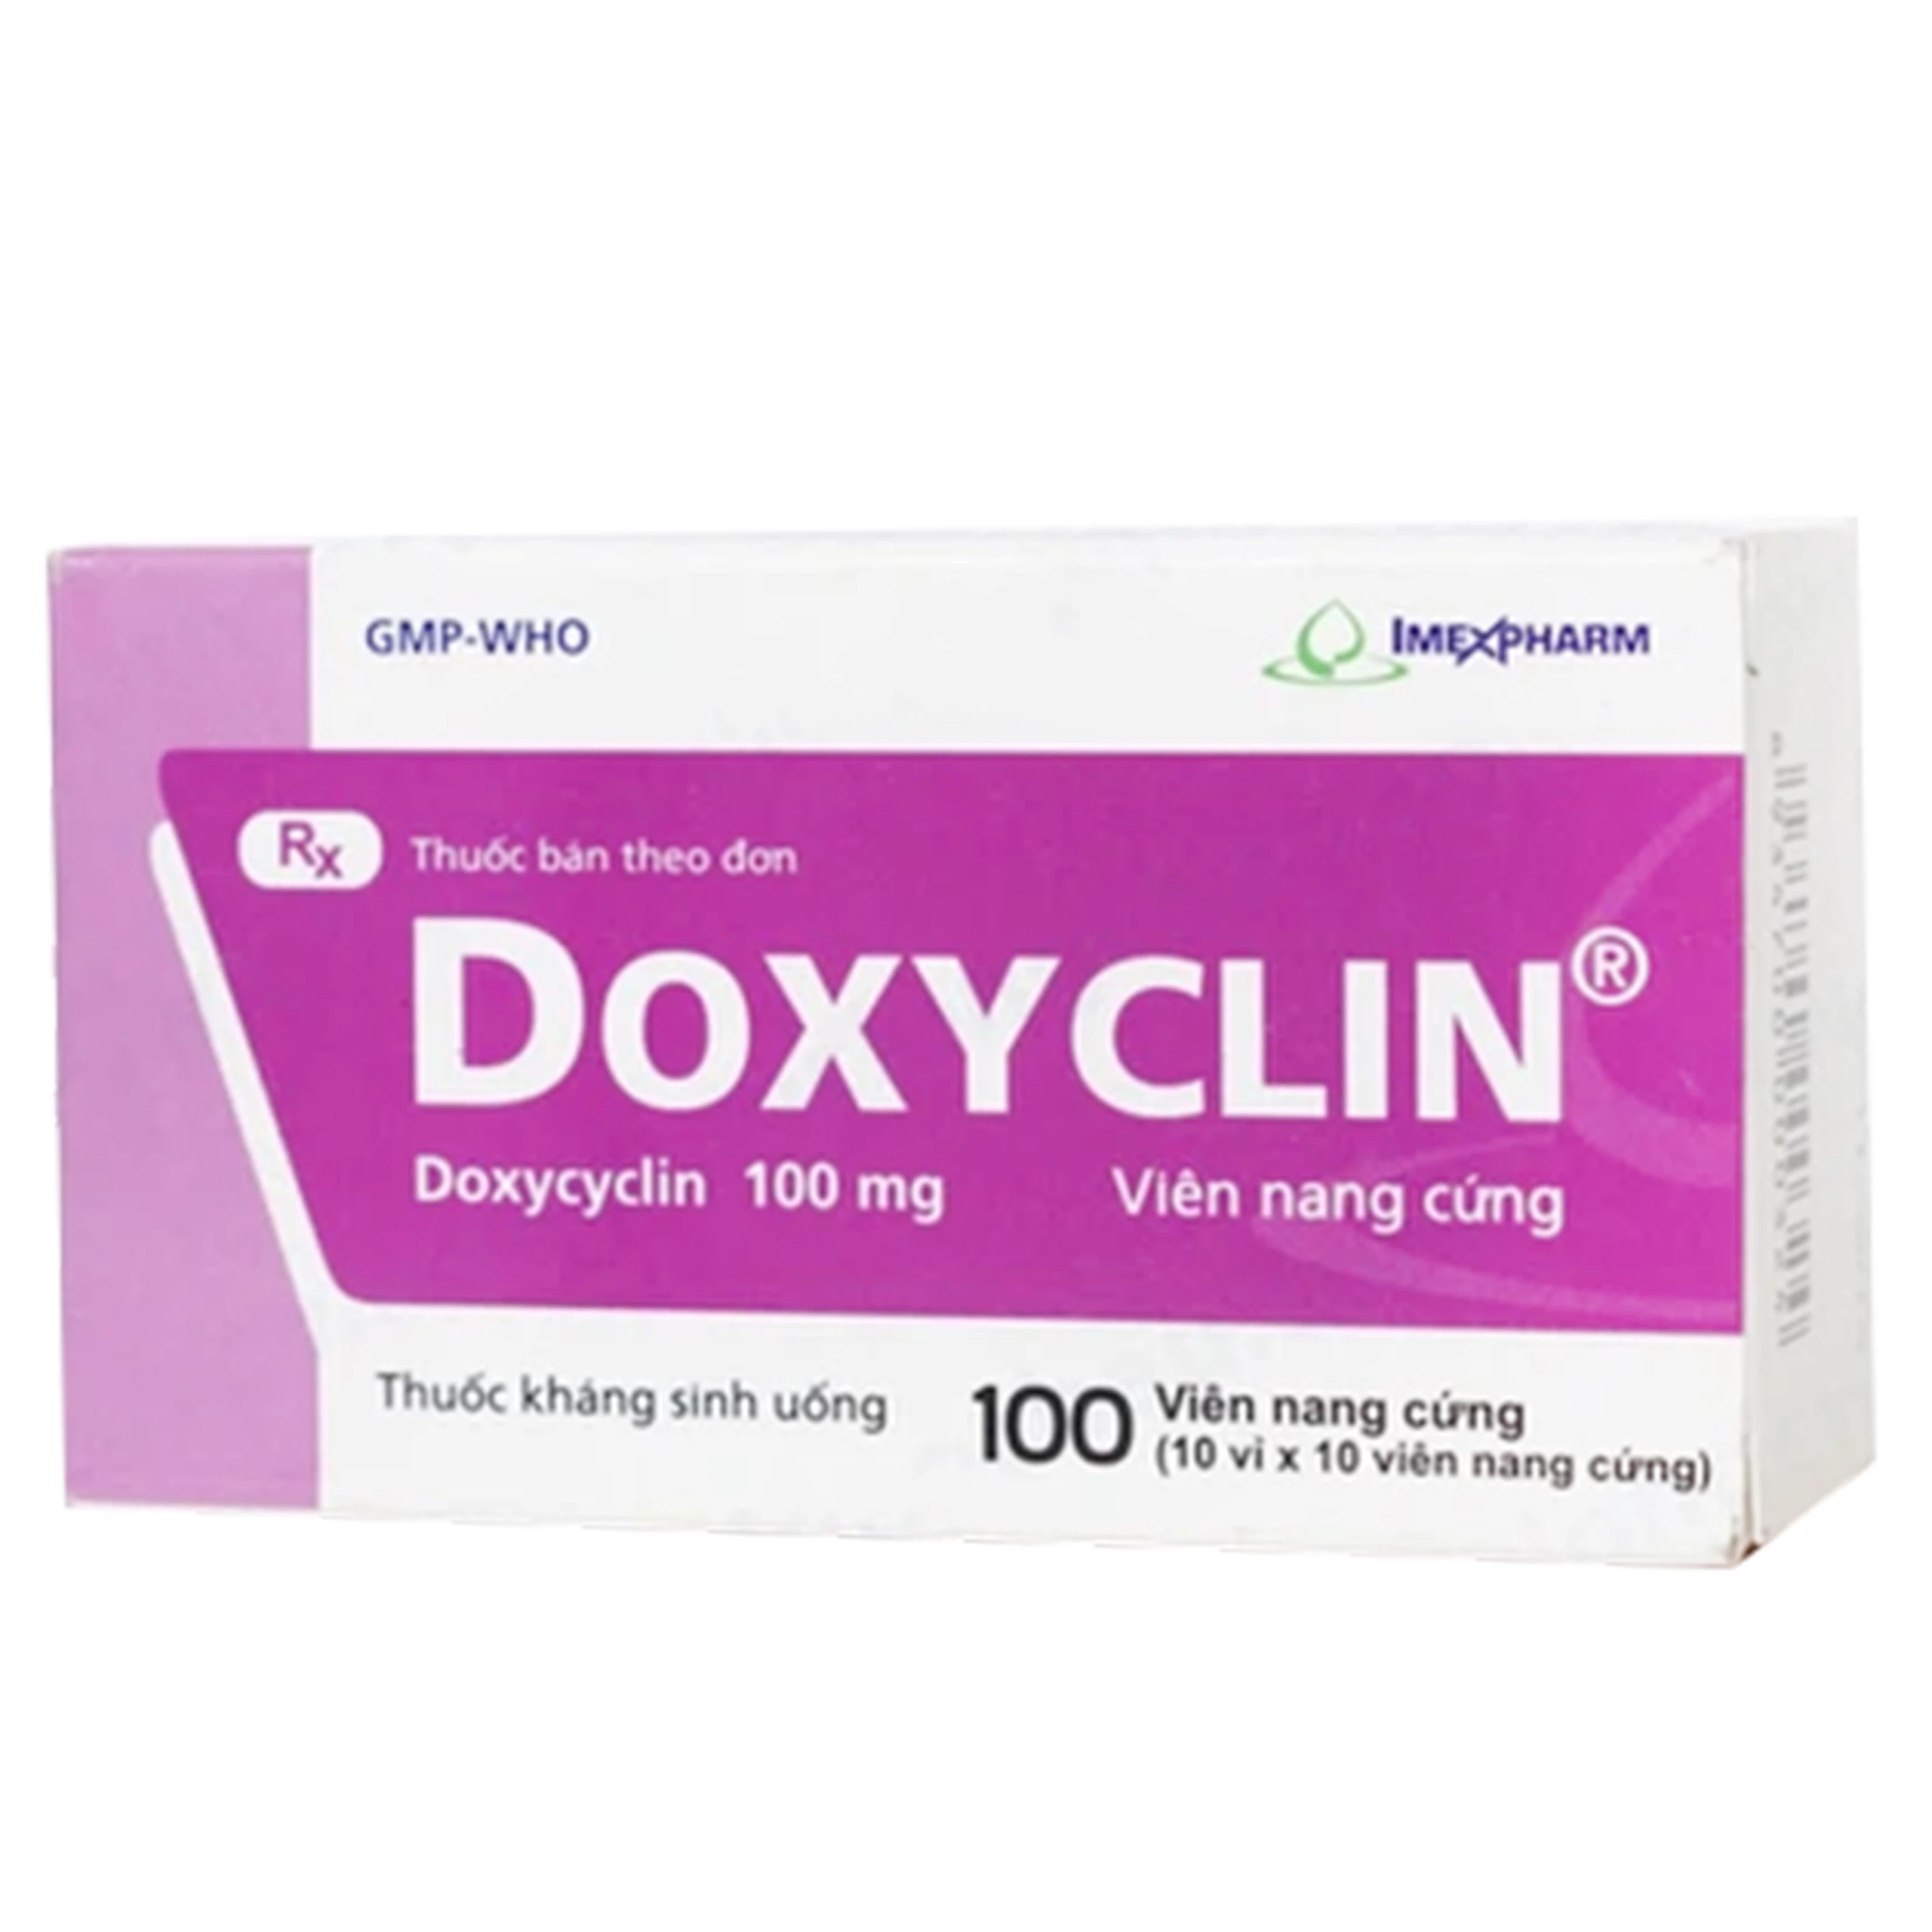 Thuốc Doxyclin Imexpharm điều trị nhiễm khuẩn (10 vỉ x 10 viên)